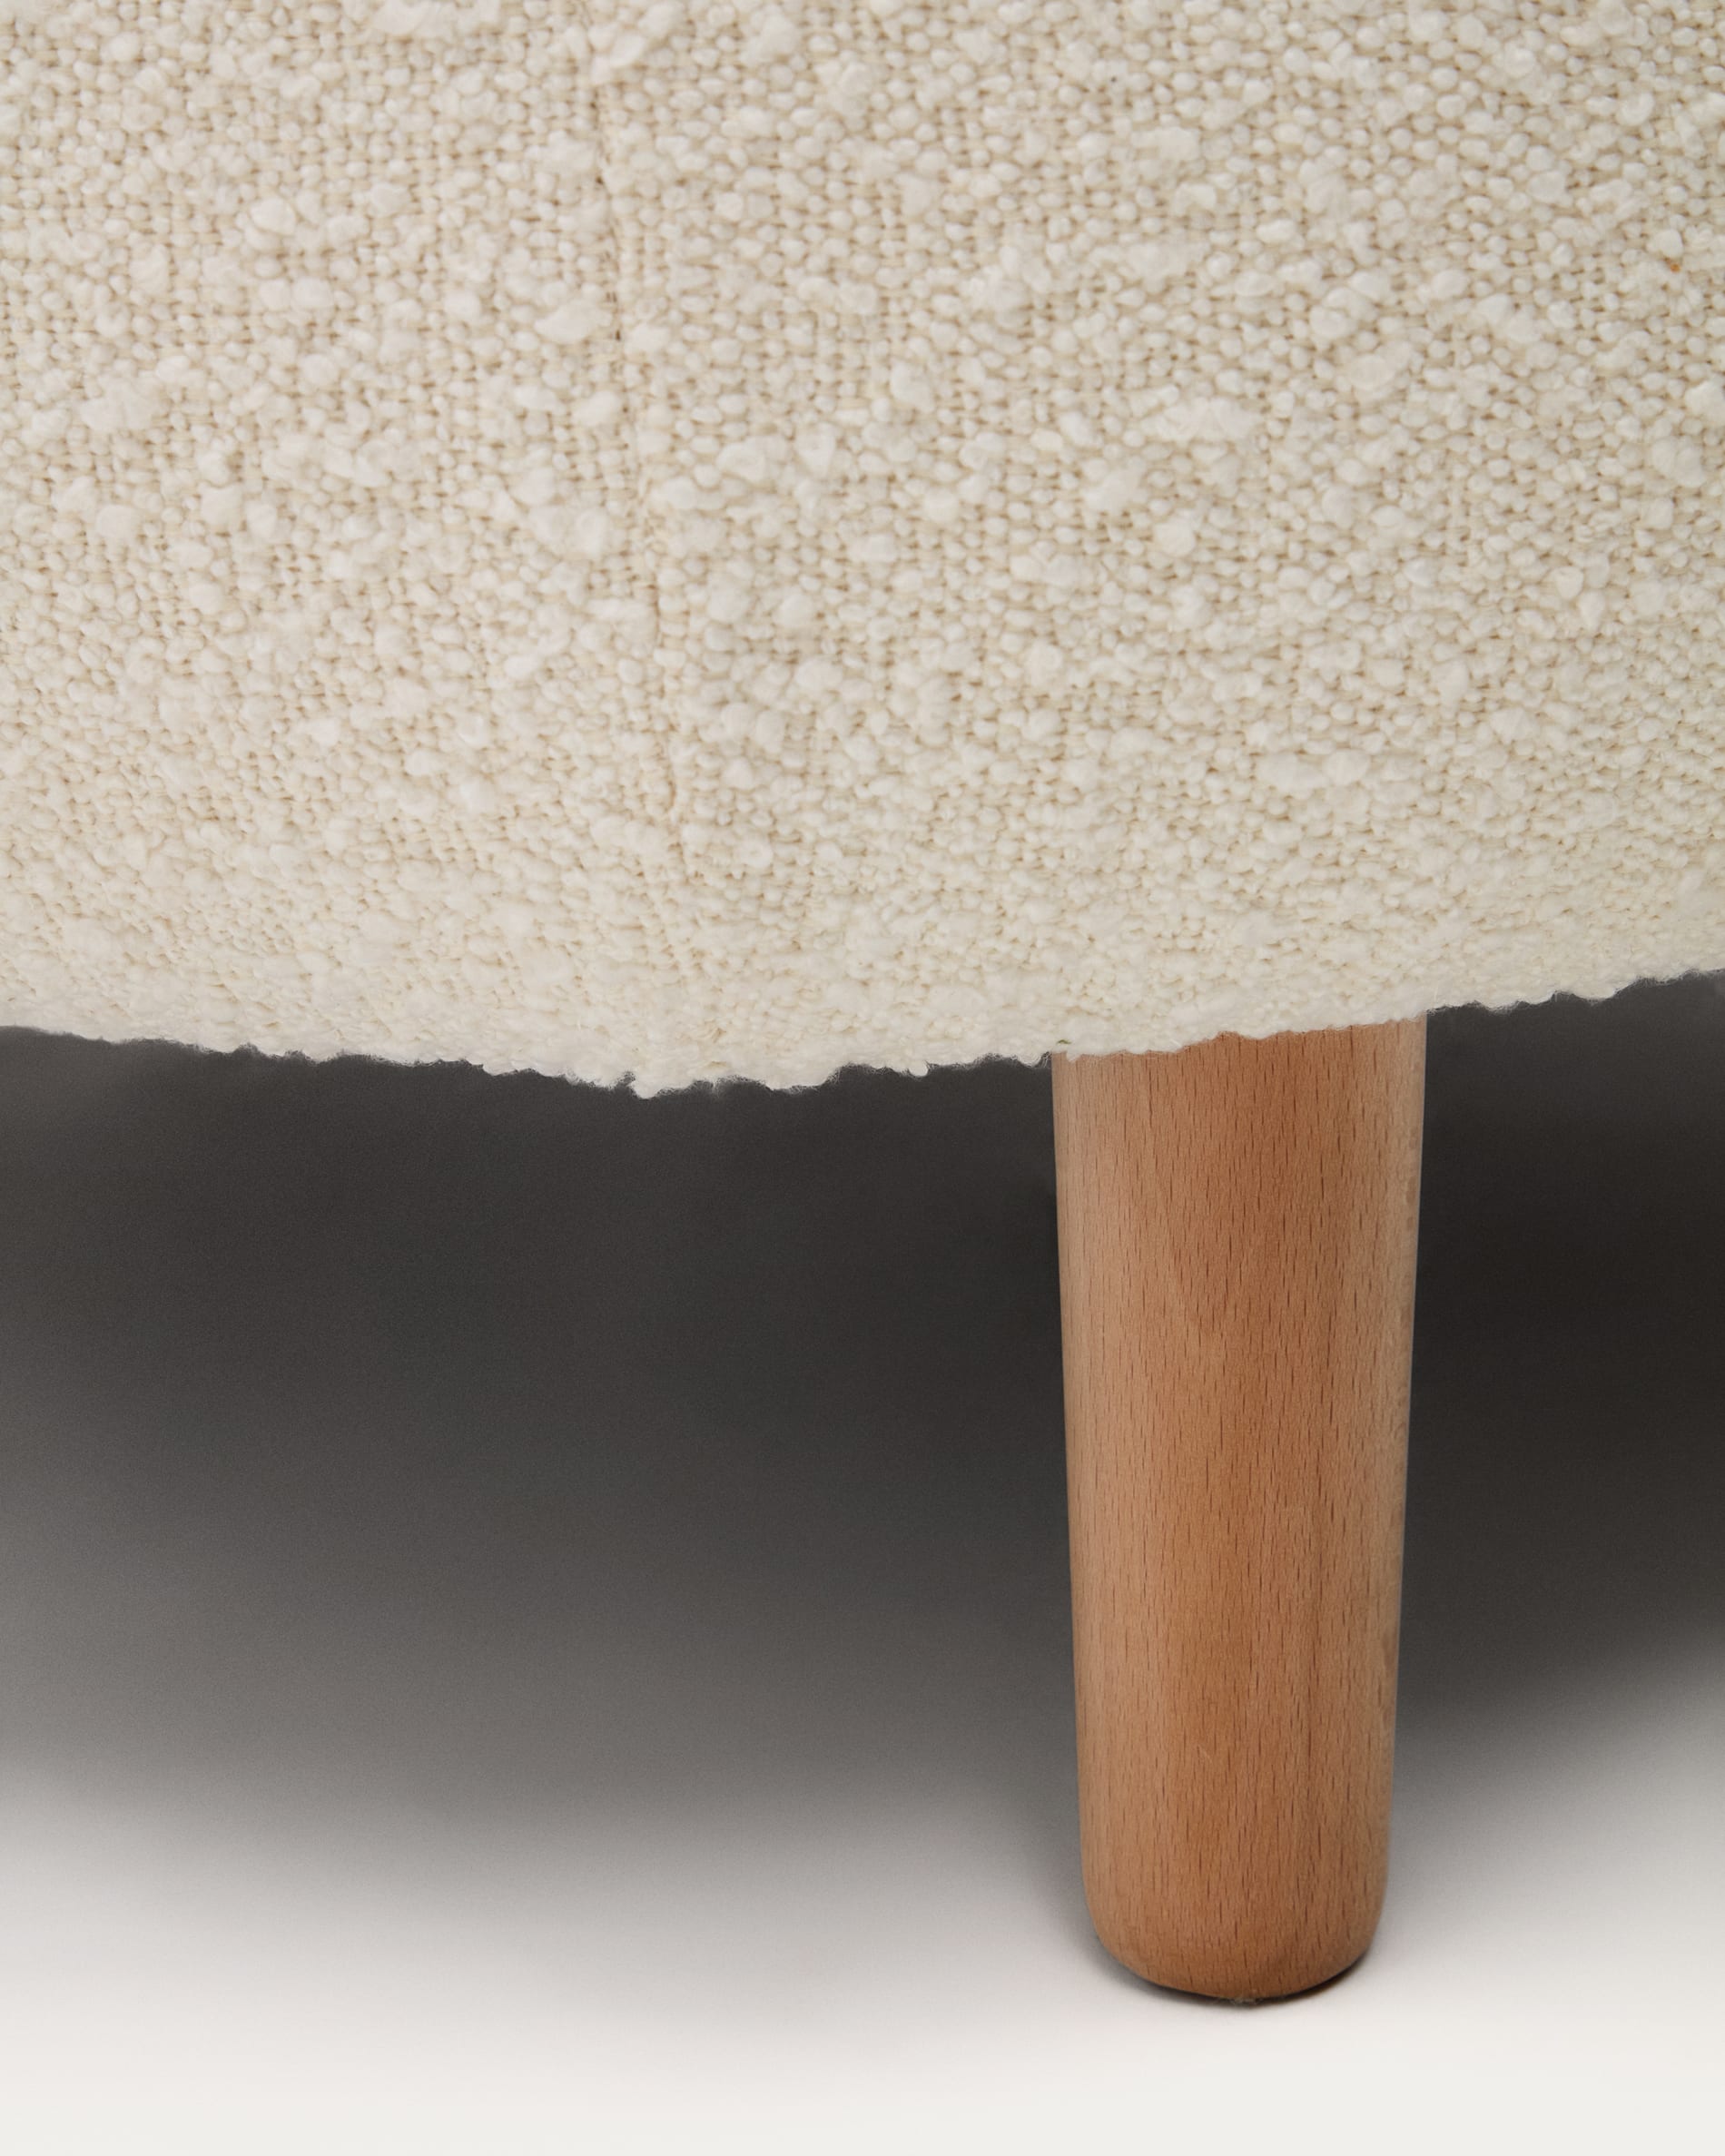 Poltrona Luisa in shearling bianco con gambe di legno di faggio massiccio